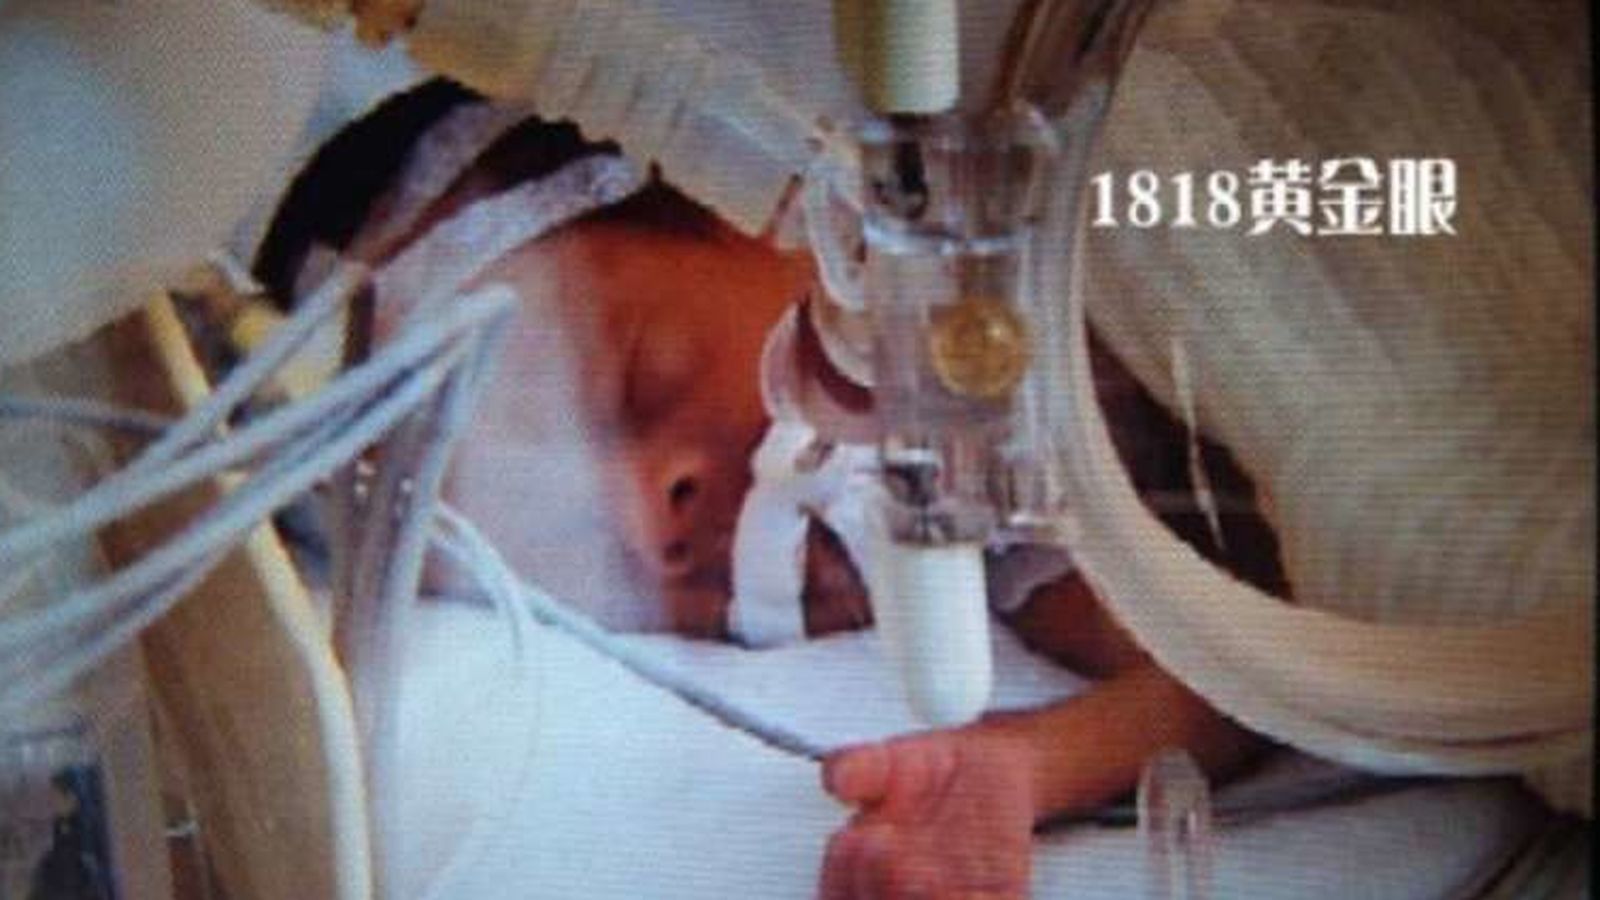 Foto: Imagen del bebé que revivió minutos antes de ser incinerado (Weibo)